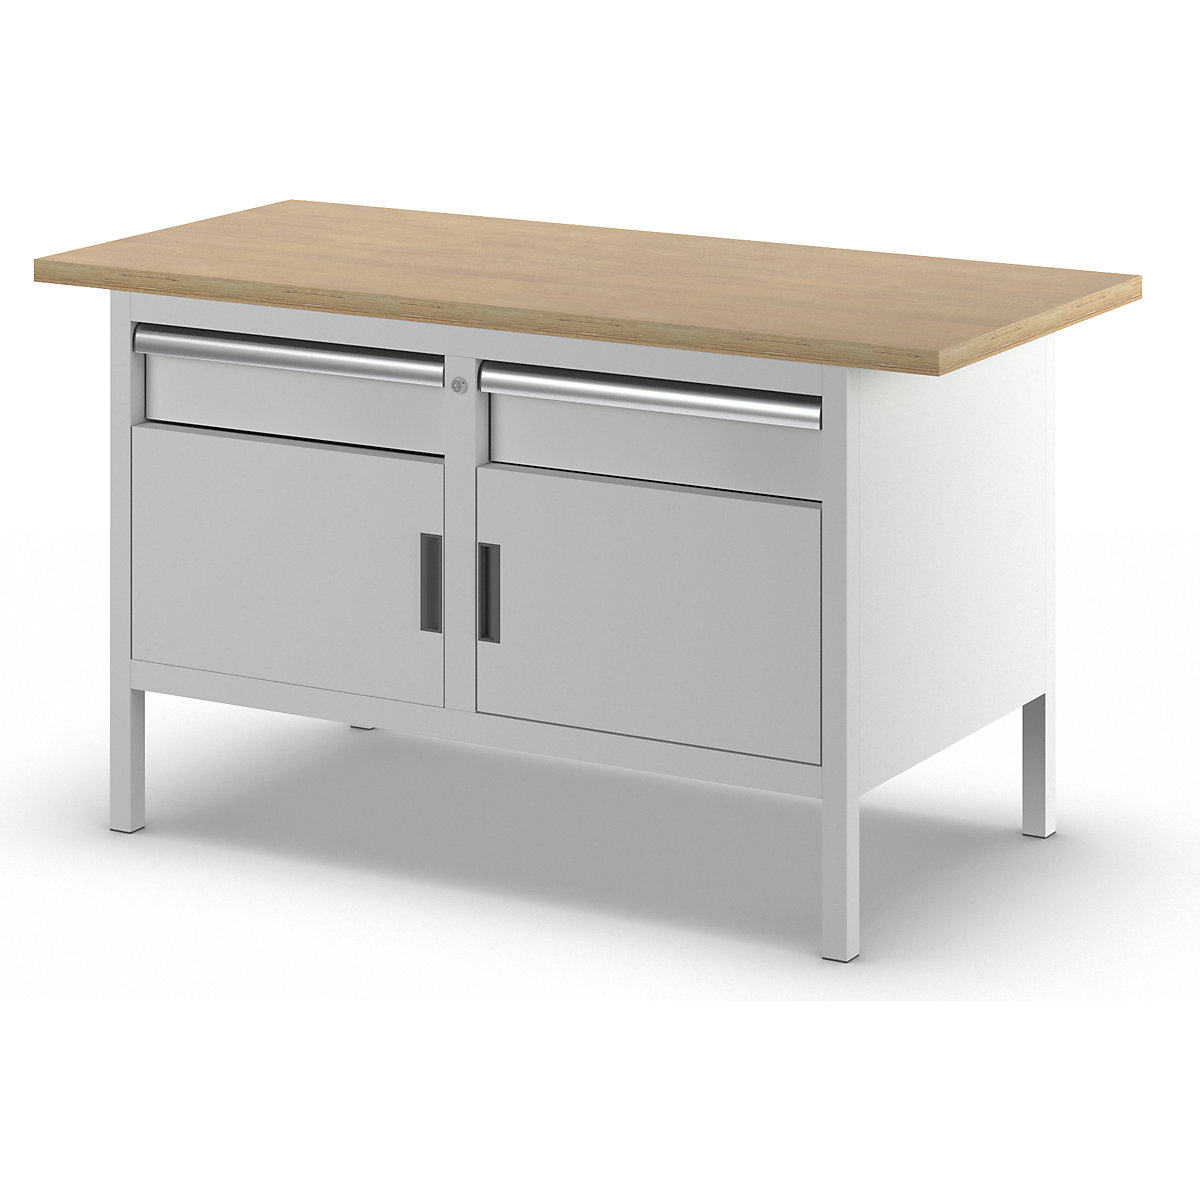 Stół warsztatowy z blatem z litego buku, konstrukcja ramowa – LISTA (Zdjęcie produktu 6)-5